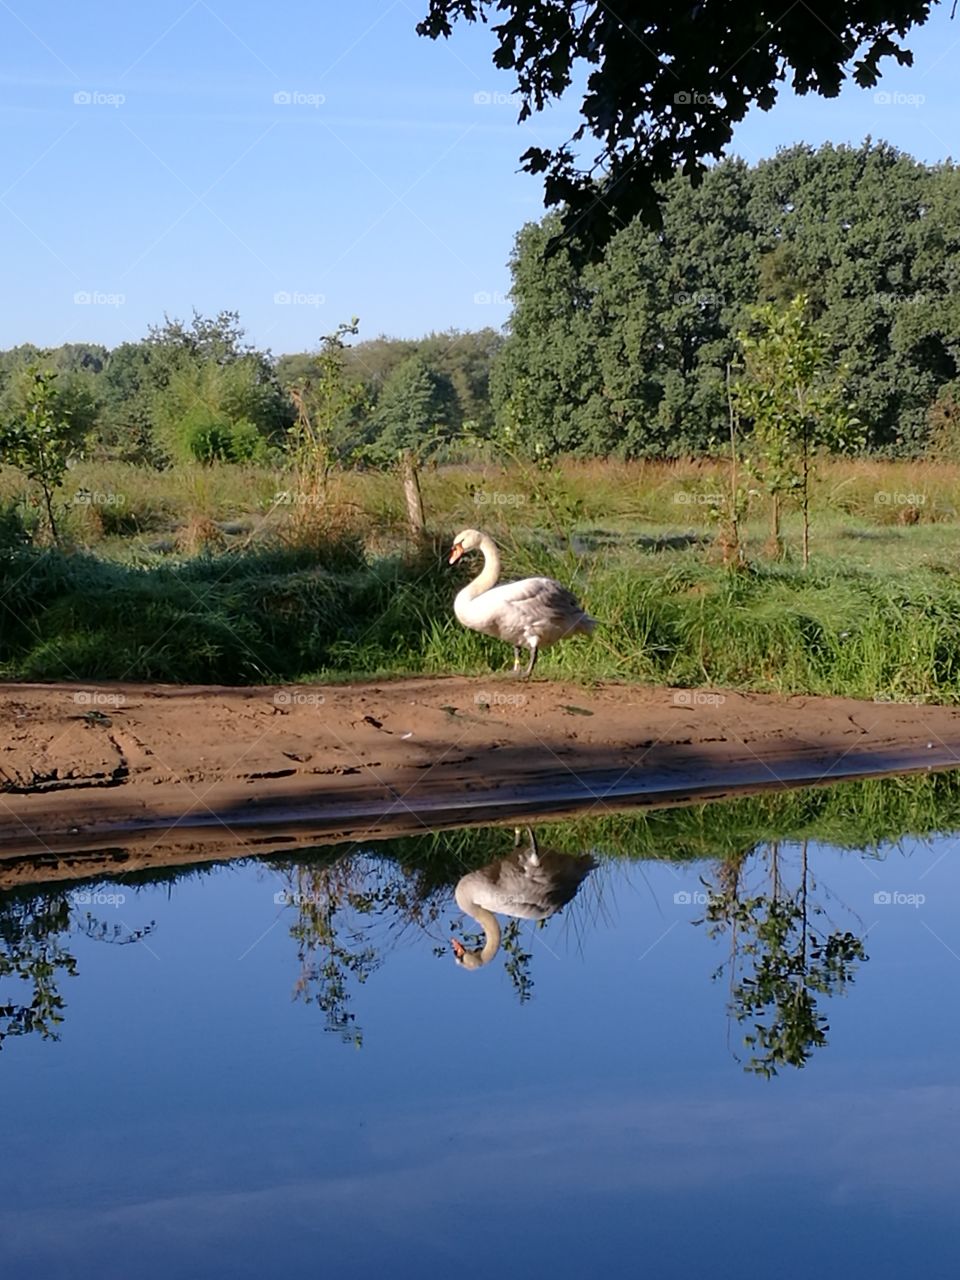 swan reflexion